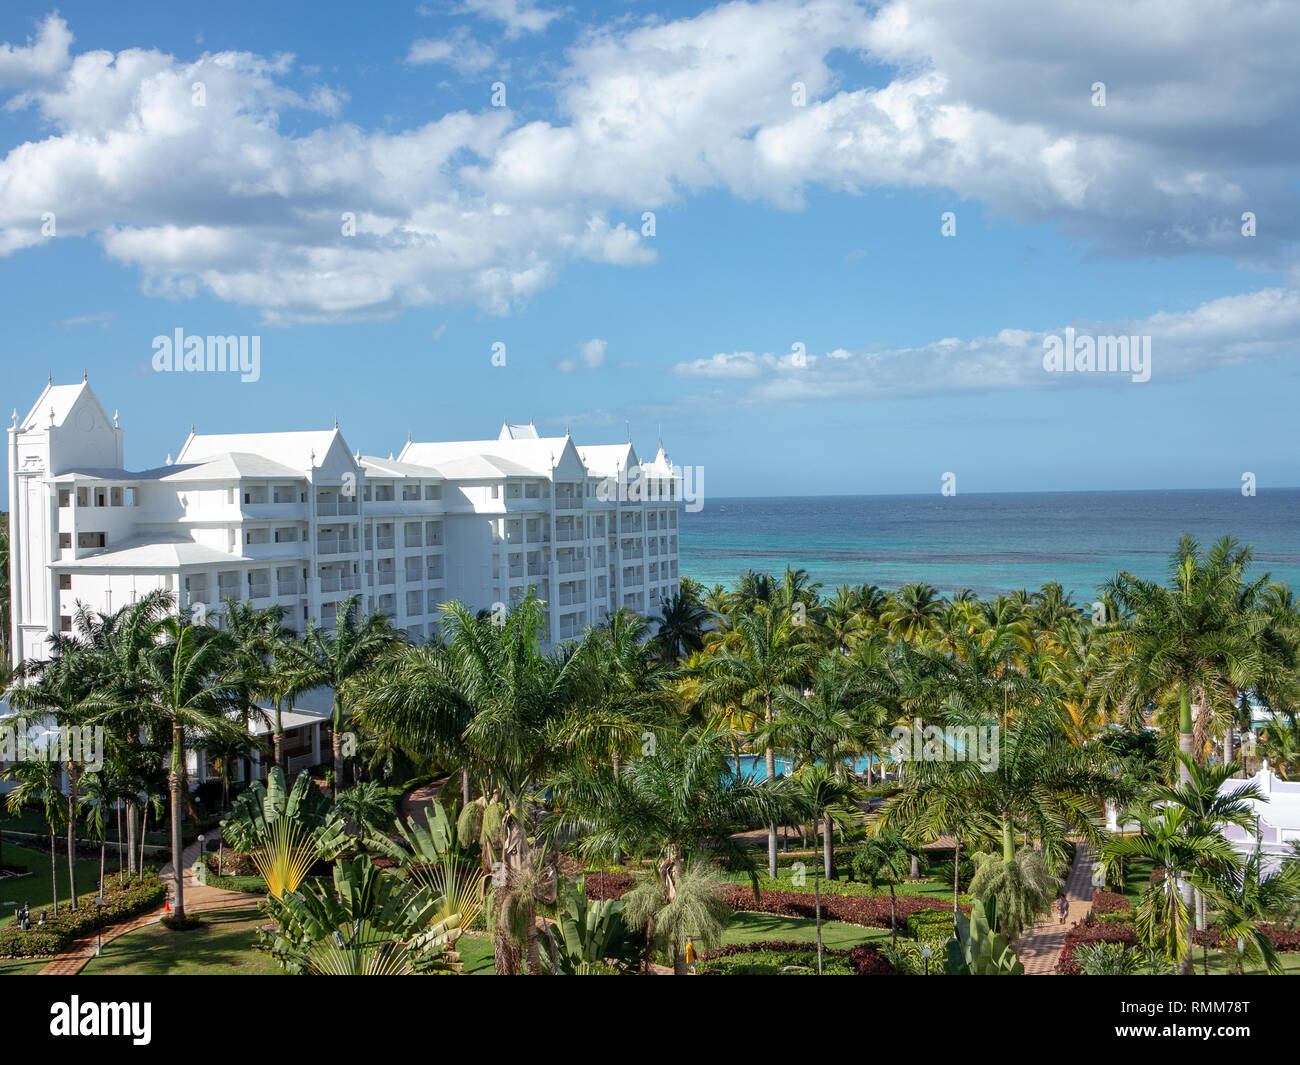 Ocho Rios Jamaica - 25 January 2019: View of large Caribbean hotel resort from balcony Stock Photo